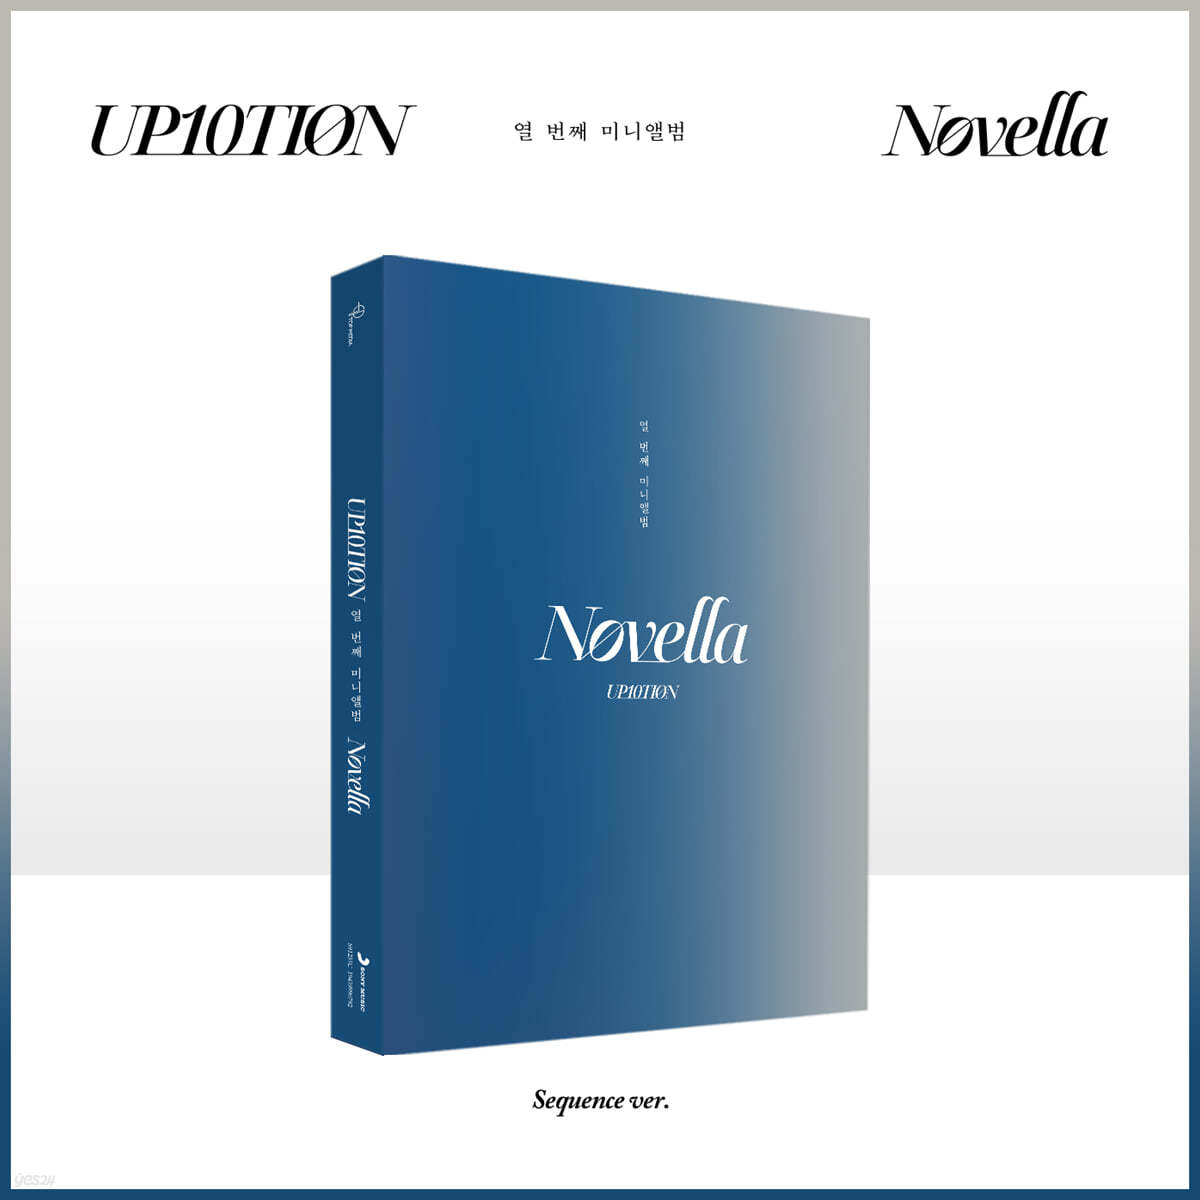 업텐션 (UP10TION) - 미니앨범 10집 : Novella [Sequence ver.]